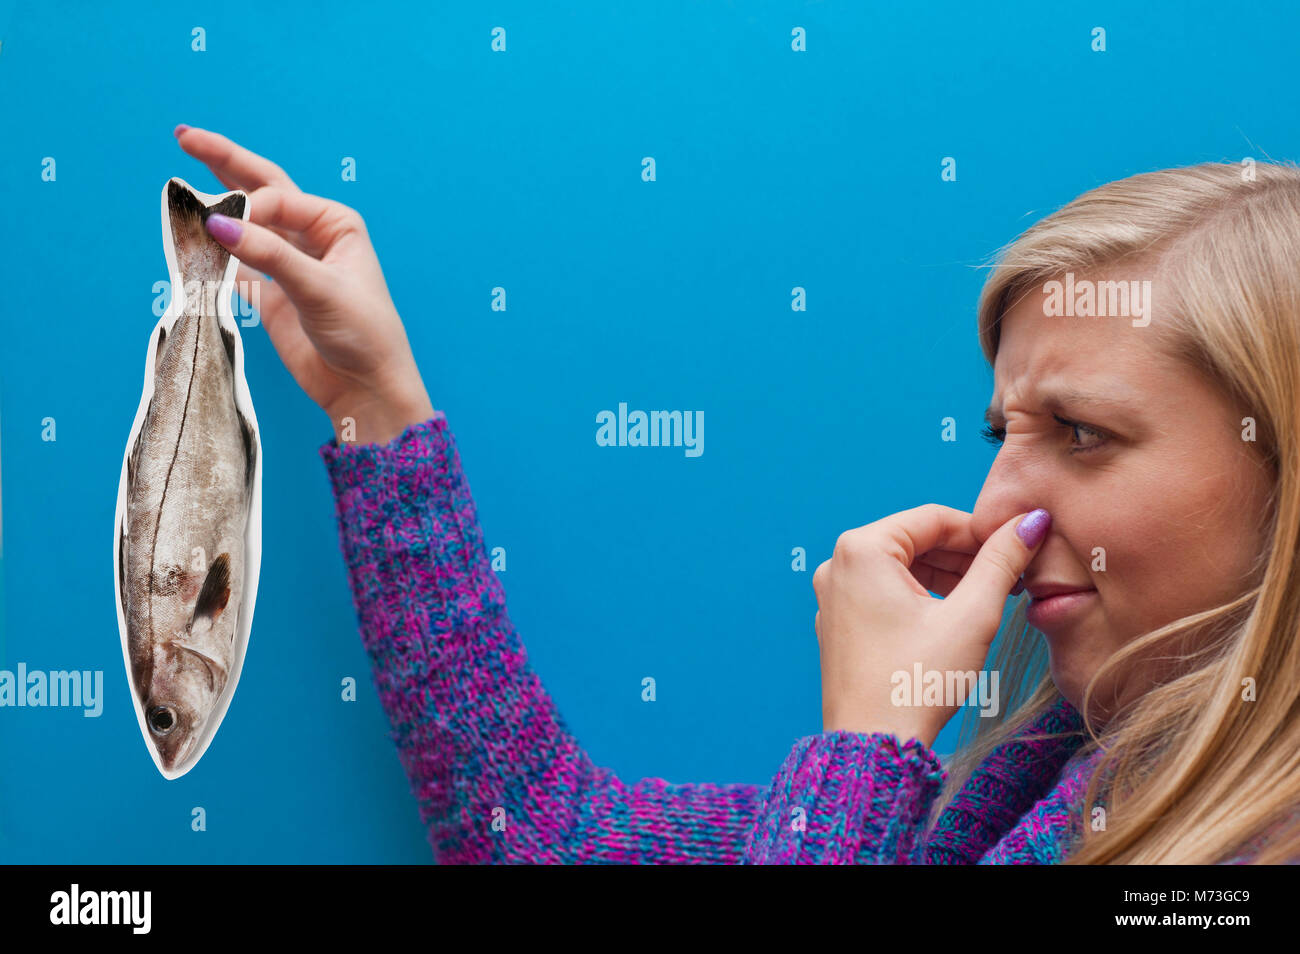 Giovane donna bionda mantenendo un fake card pesce e mantenendo il suo naso in disgusto, concetto di inglese dicendo: 'smells pesce' - qualcuno essendo disonesto. Foto Stock